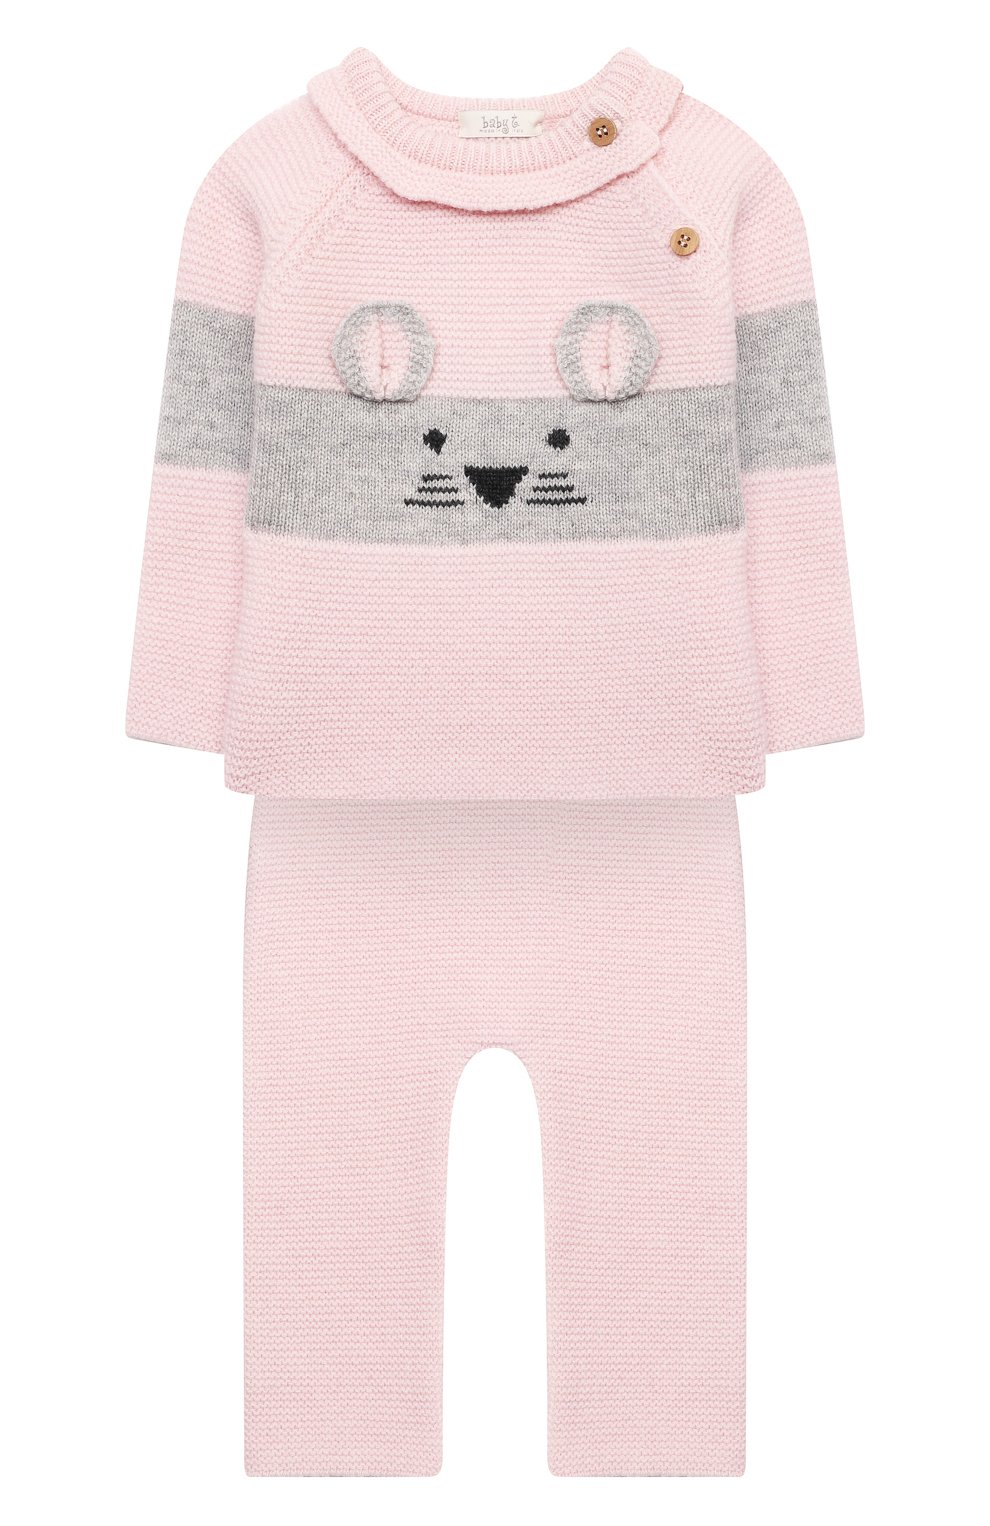 Детский комплект из пуловера и брюк BABY T розового цвета, арт. 21AI150C/18M-3A | Фото 1 (Кросс-КТ НВ: Костюм; Материал внешний: Шерсть; Рукава: Длинные)